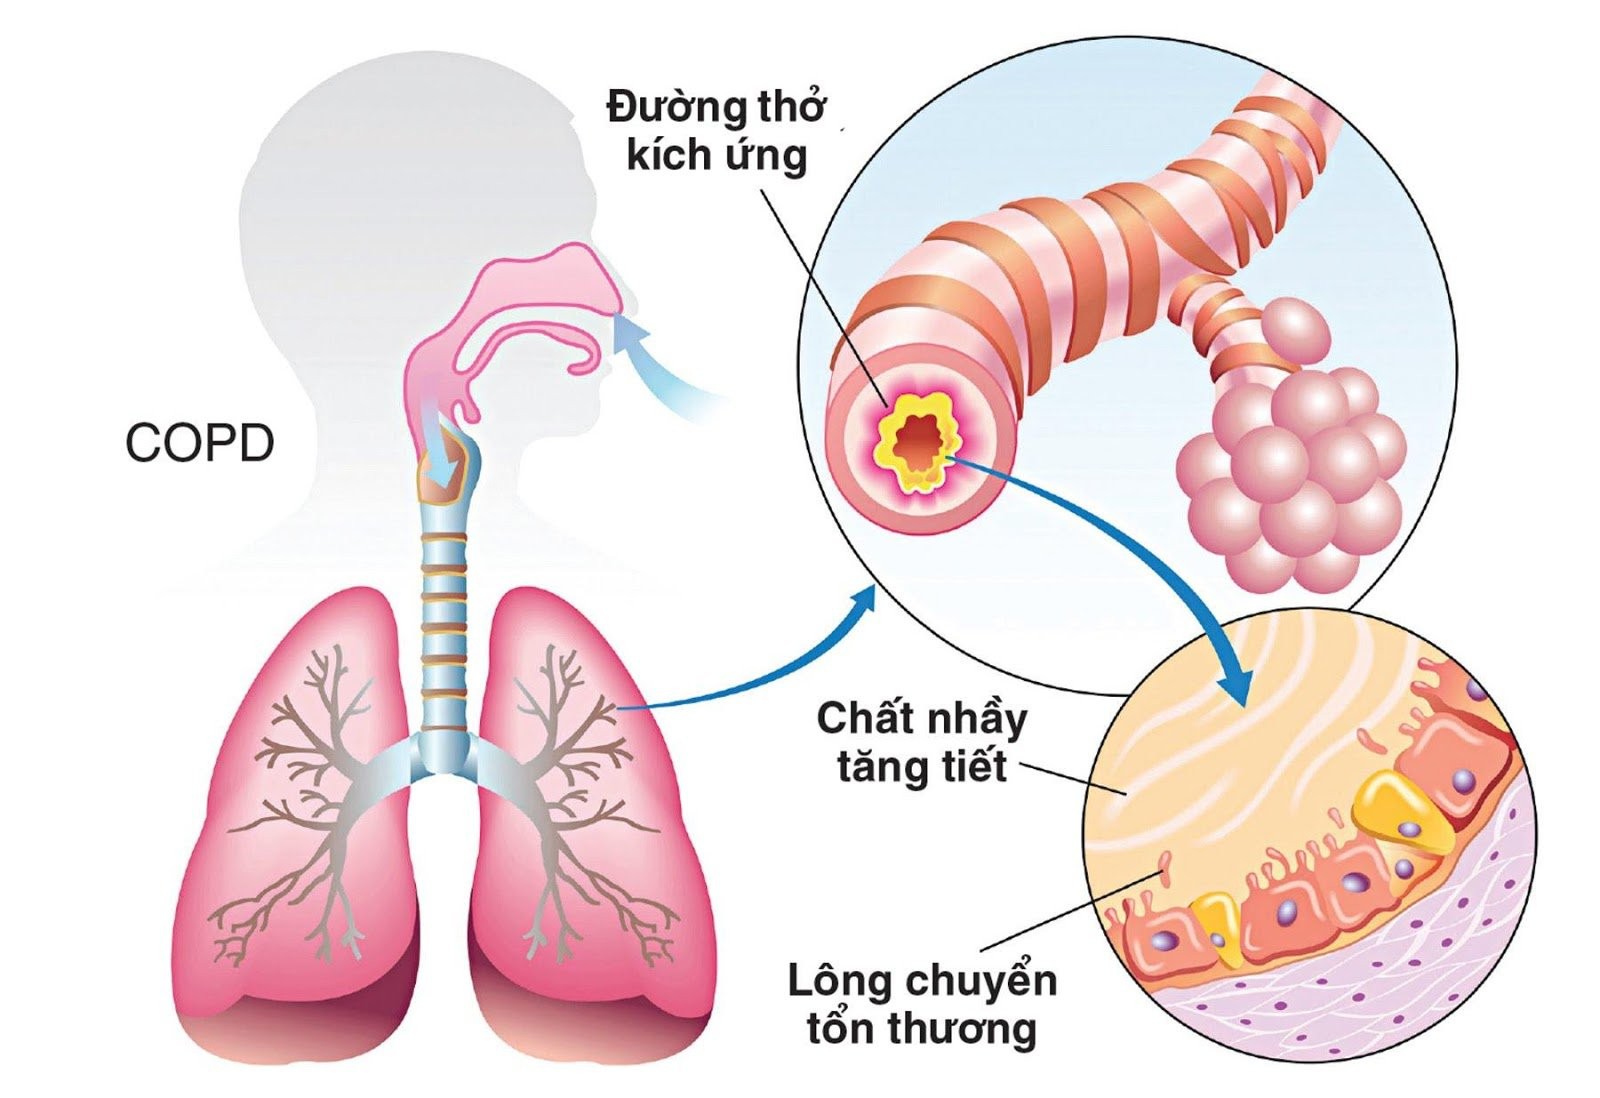 Bệnh phổi tắc nghẽn mạn tính (COPD) là một trong những nguyên nhân có thể gây suy hô hấp